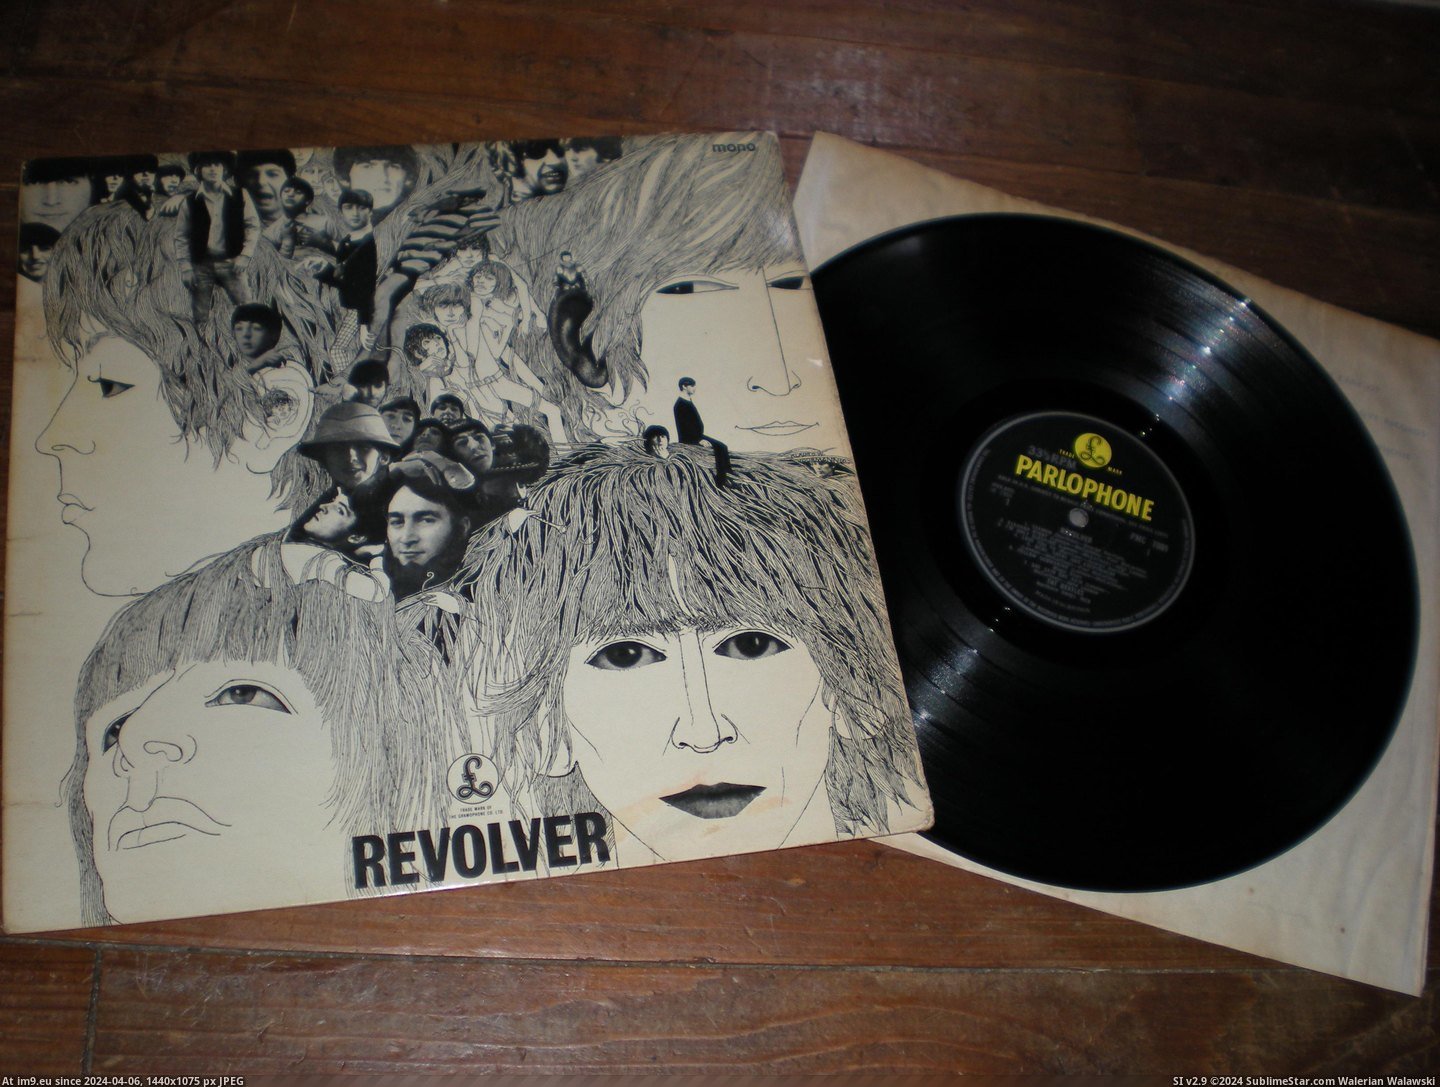  #Revolver  Revolver Mix 11 2 Pic. (Bild von album new 1))